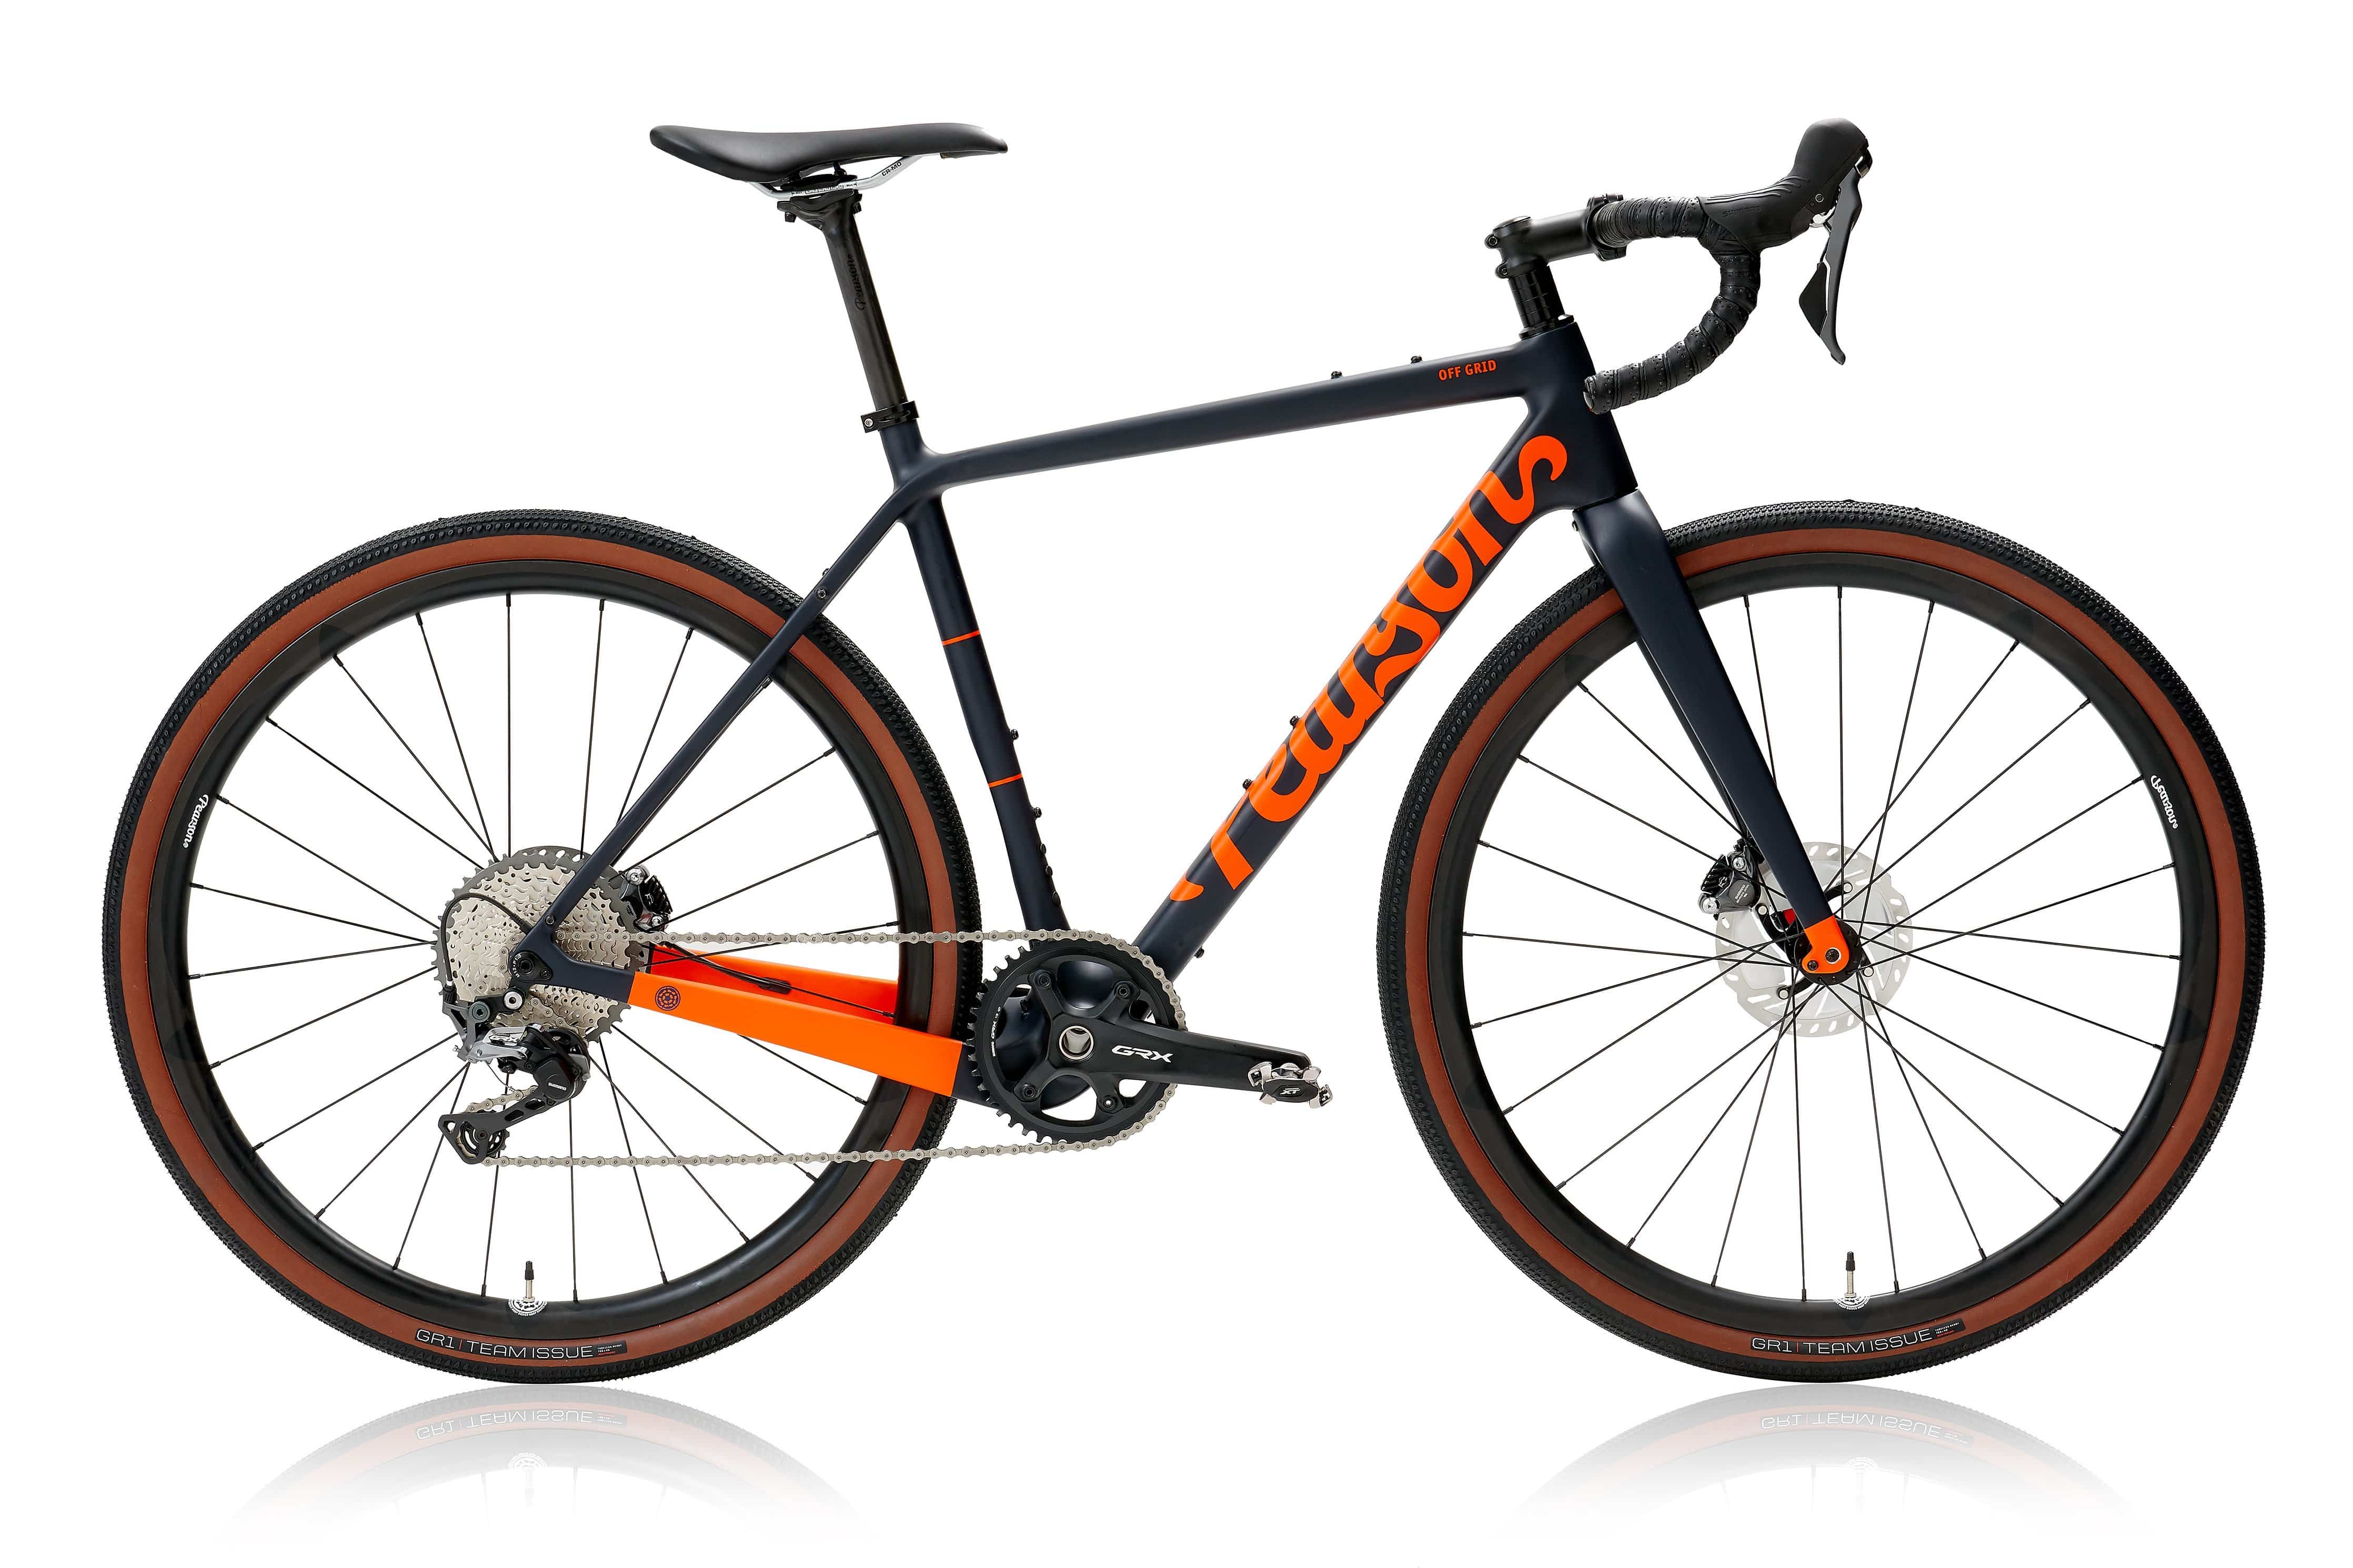 Pcs  Off Grid - Carbon Gravel Bike  Matt Orange On Matt Deep Blue / Small / Grx 800 Mechanical - Hoopdriver Bump And Grind Carbon